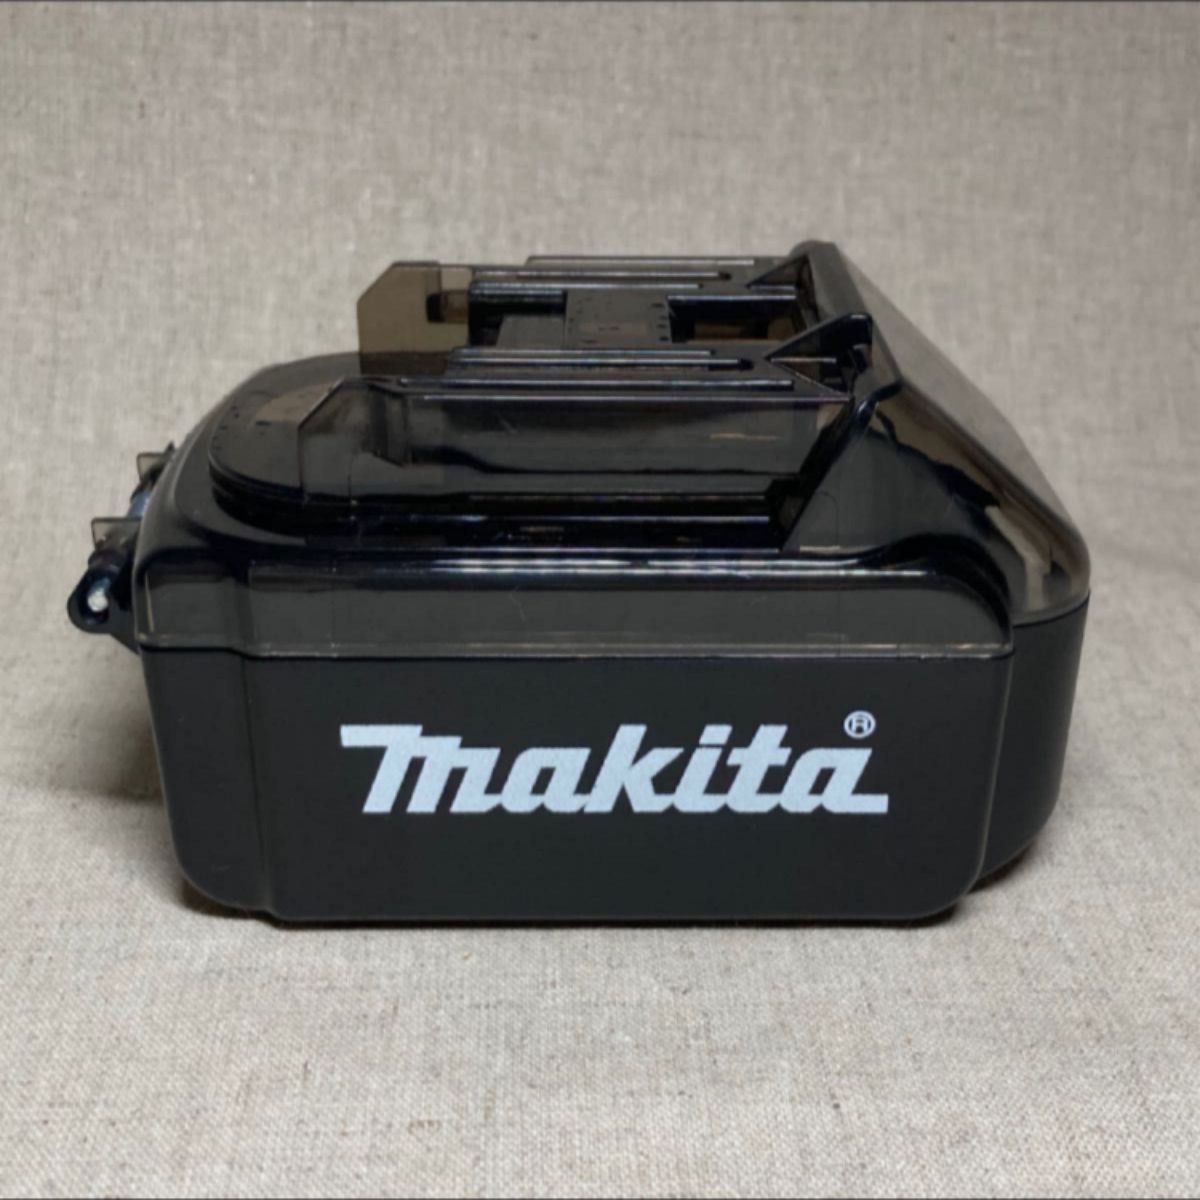 ステッカー付き！2個セット MAKITA マキタ バッテリー型ケース 小物入れ 海外マキタ製品 makita 18v